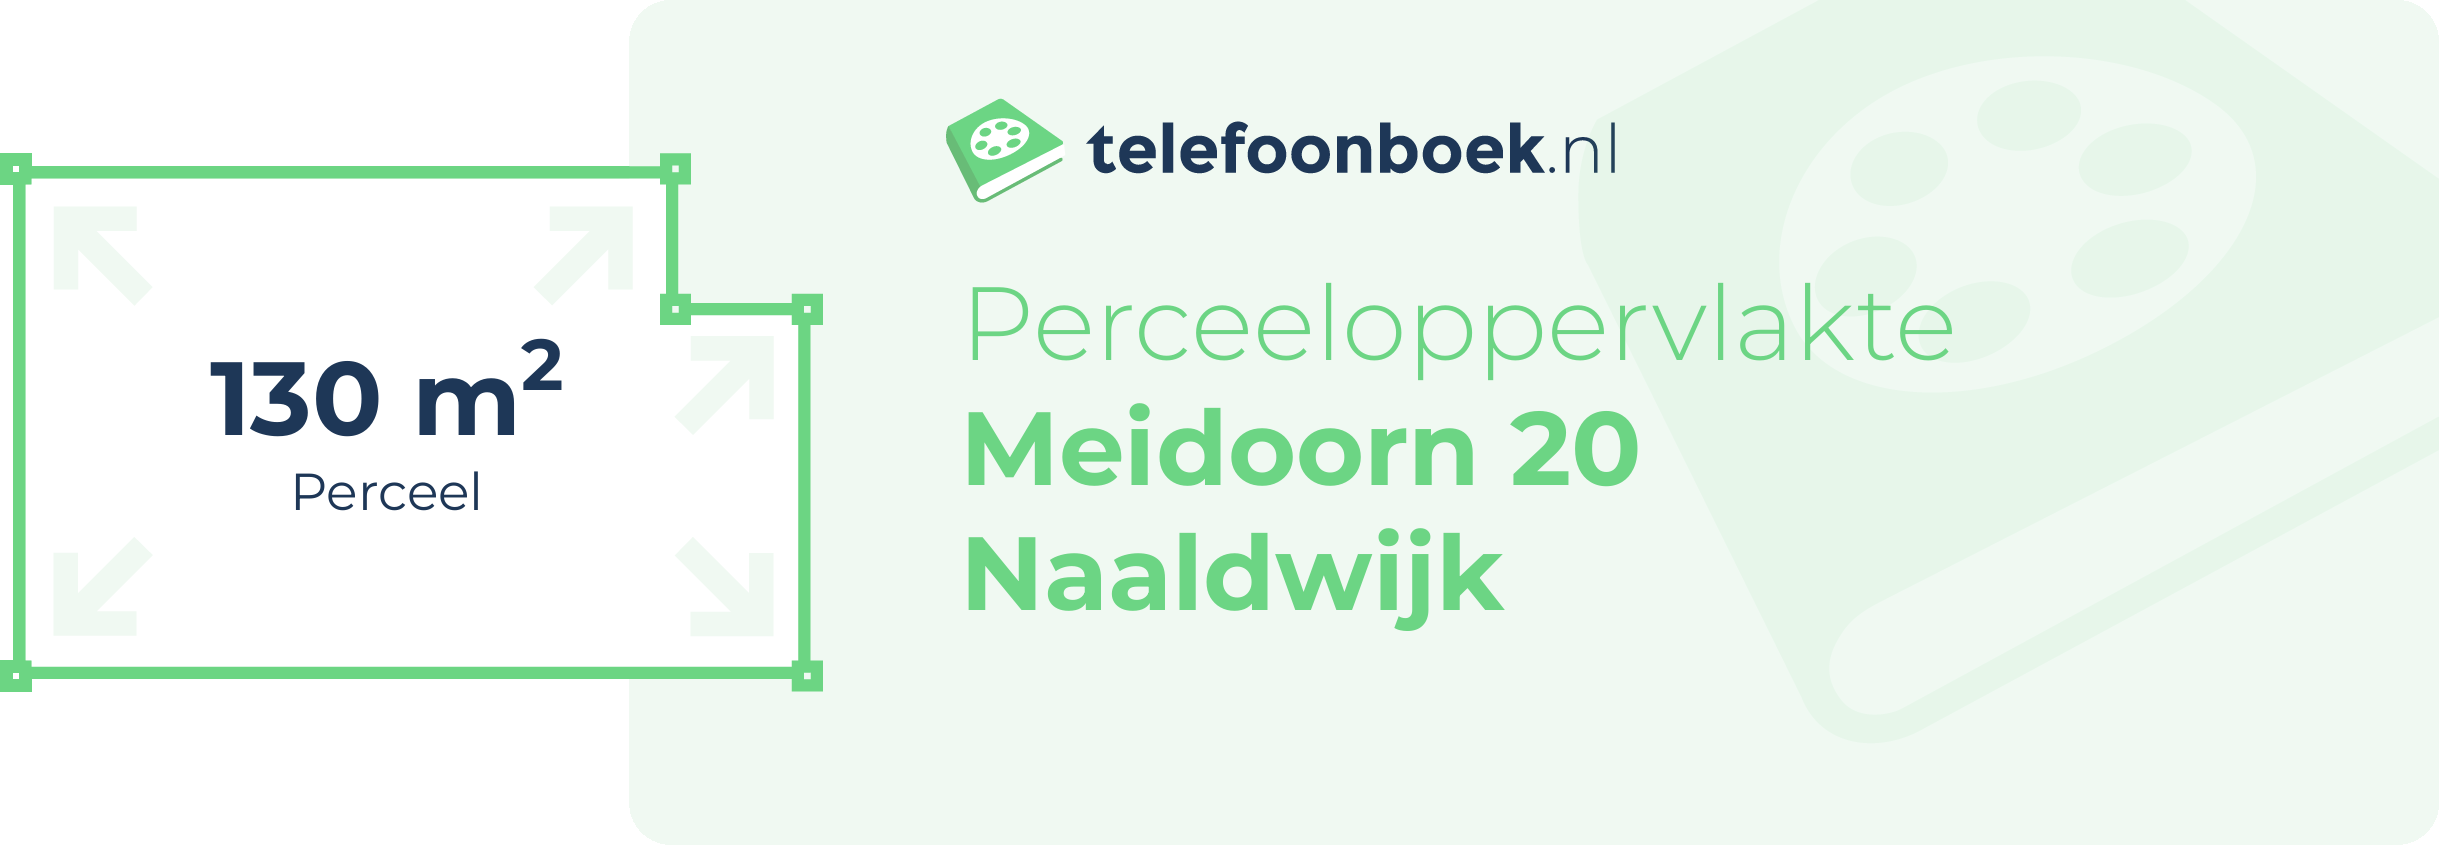 Perceeloppervlakte Meidoorn 20 Naaldwijk